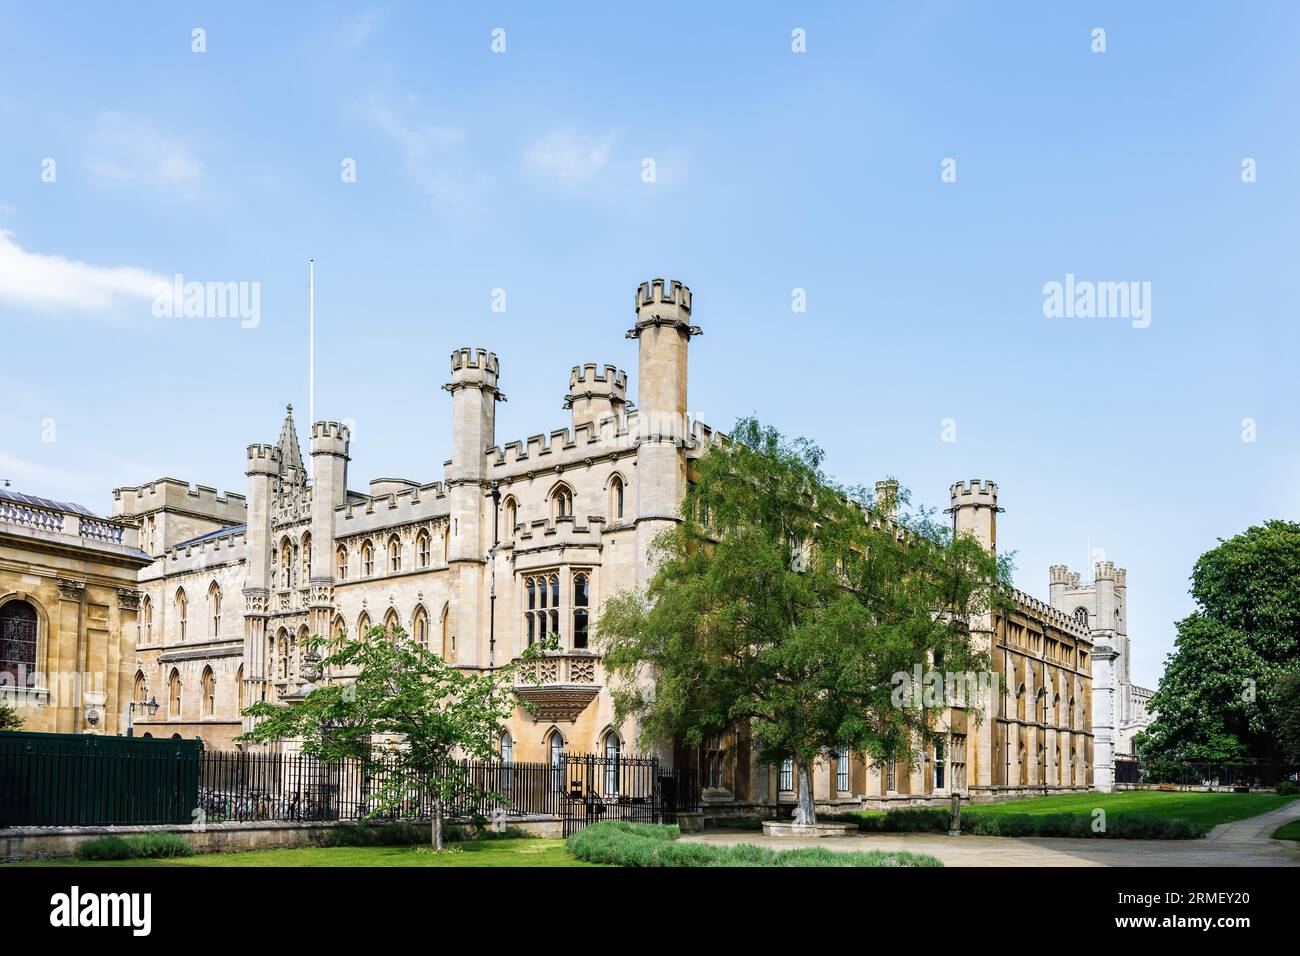 L'edificio Old School dell'Università di Cambridge è stato fondato nel 1209, è prestigioso, storico e rinomato a livello mondiale per l'eccellenza accademica, notevole Foto Stock